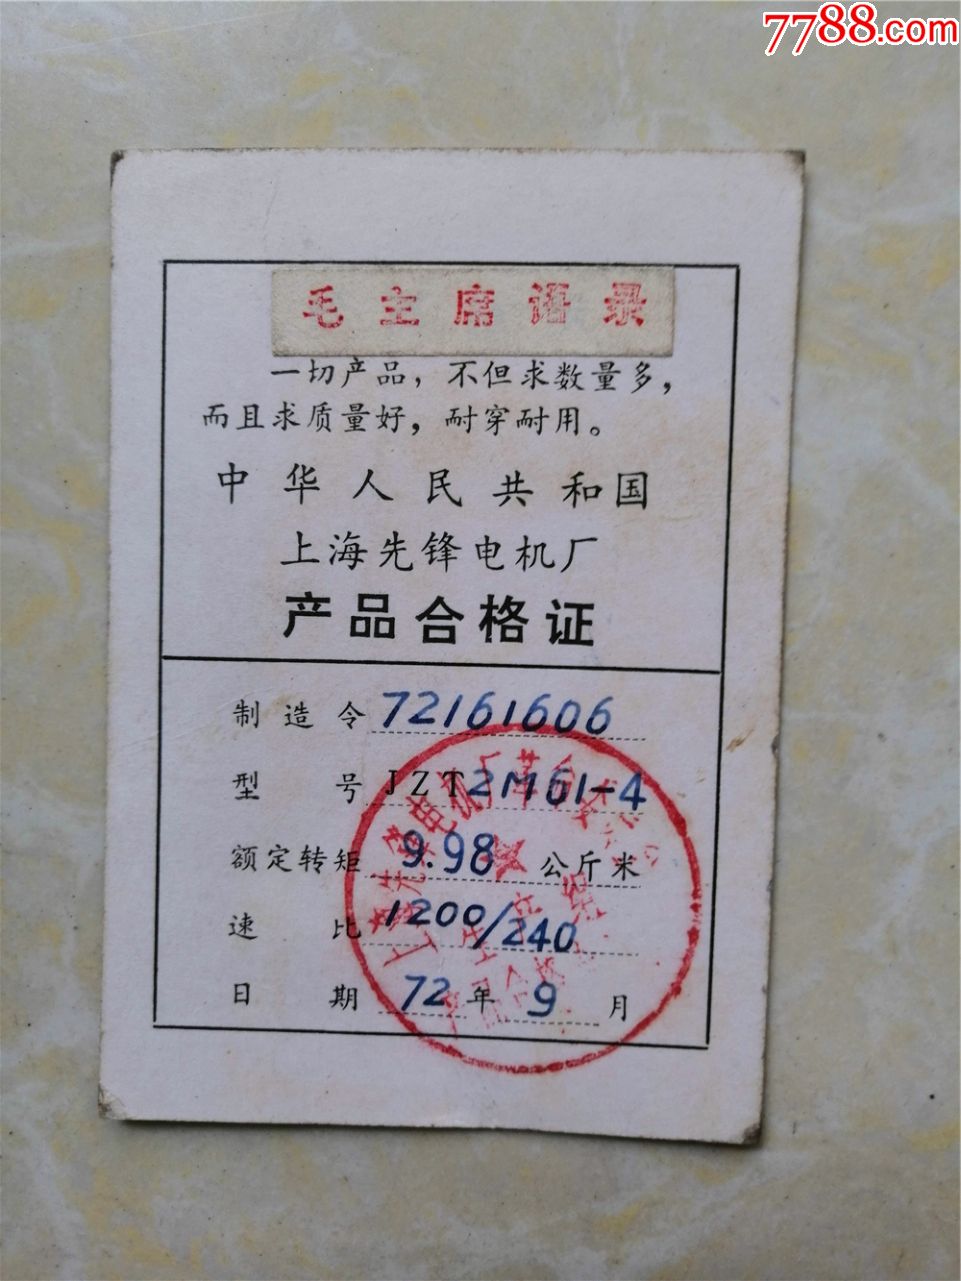 上海先锋电机厂产品合格证